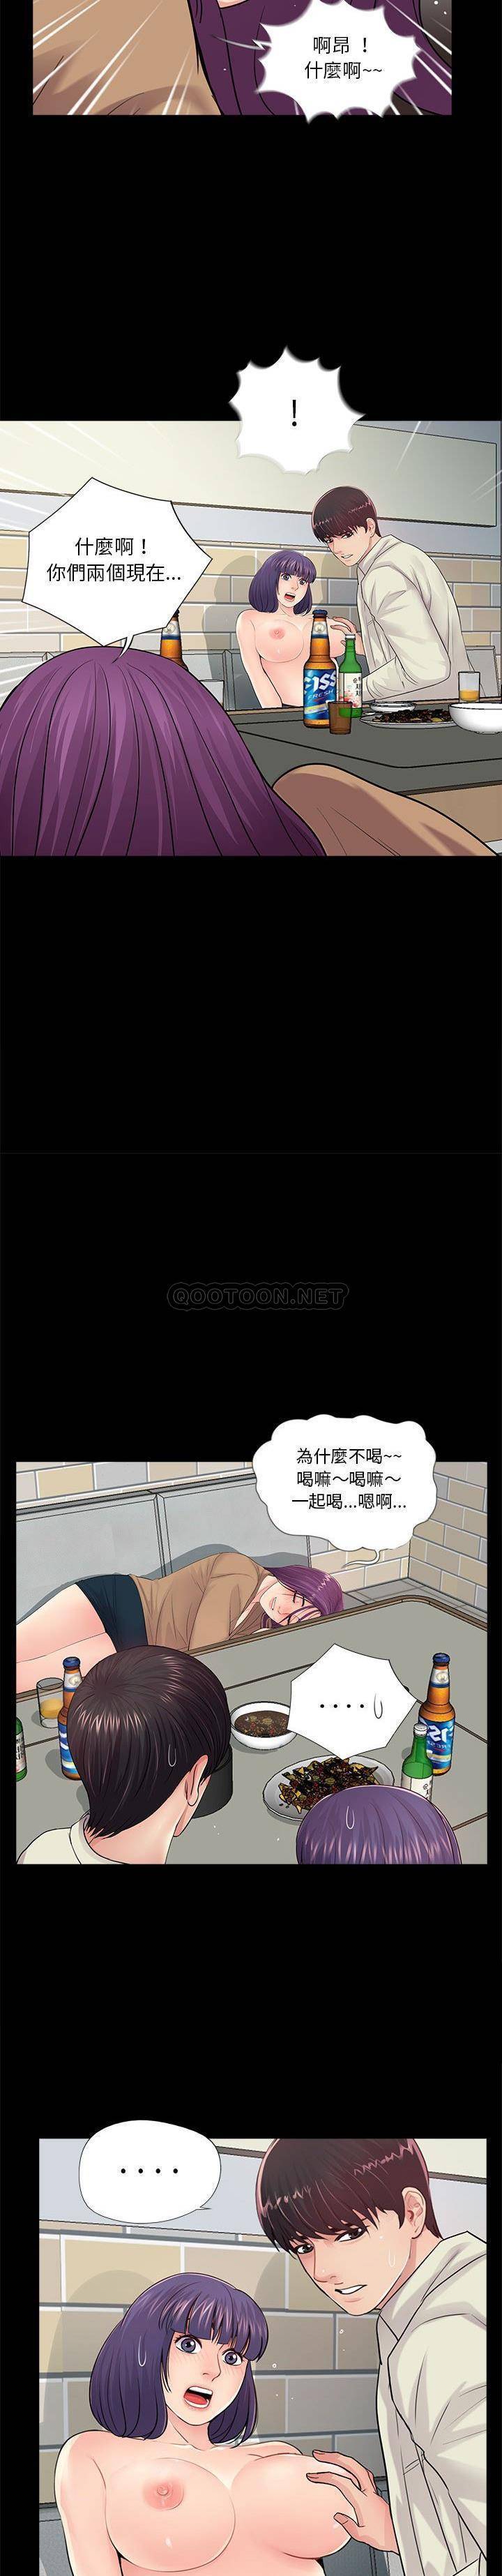 韩国污漫画 神秘復學生 第15话 14